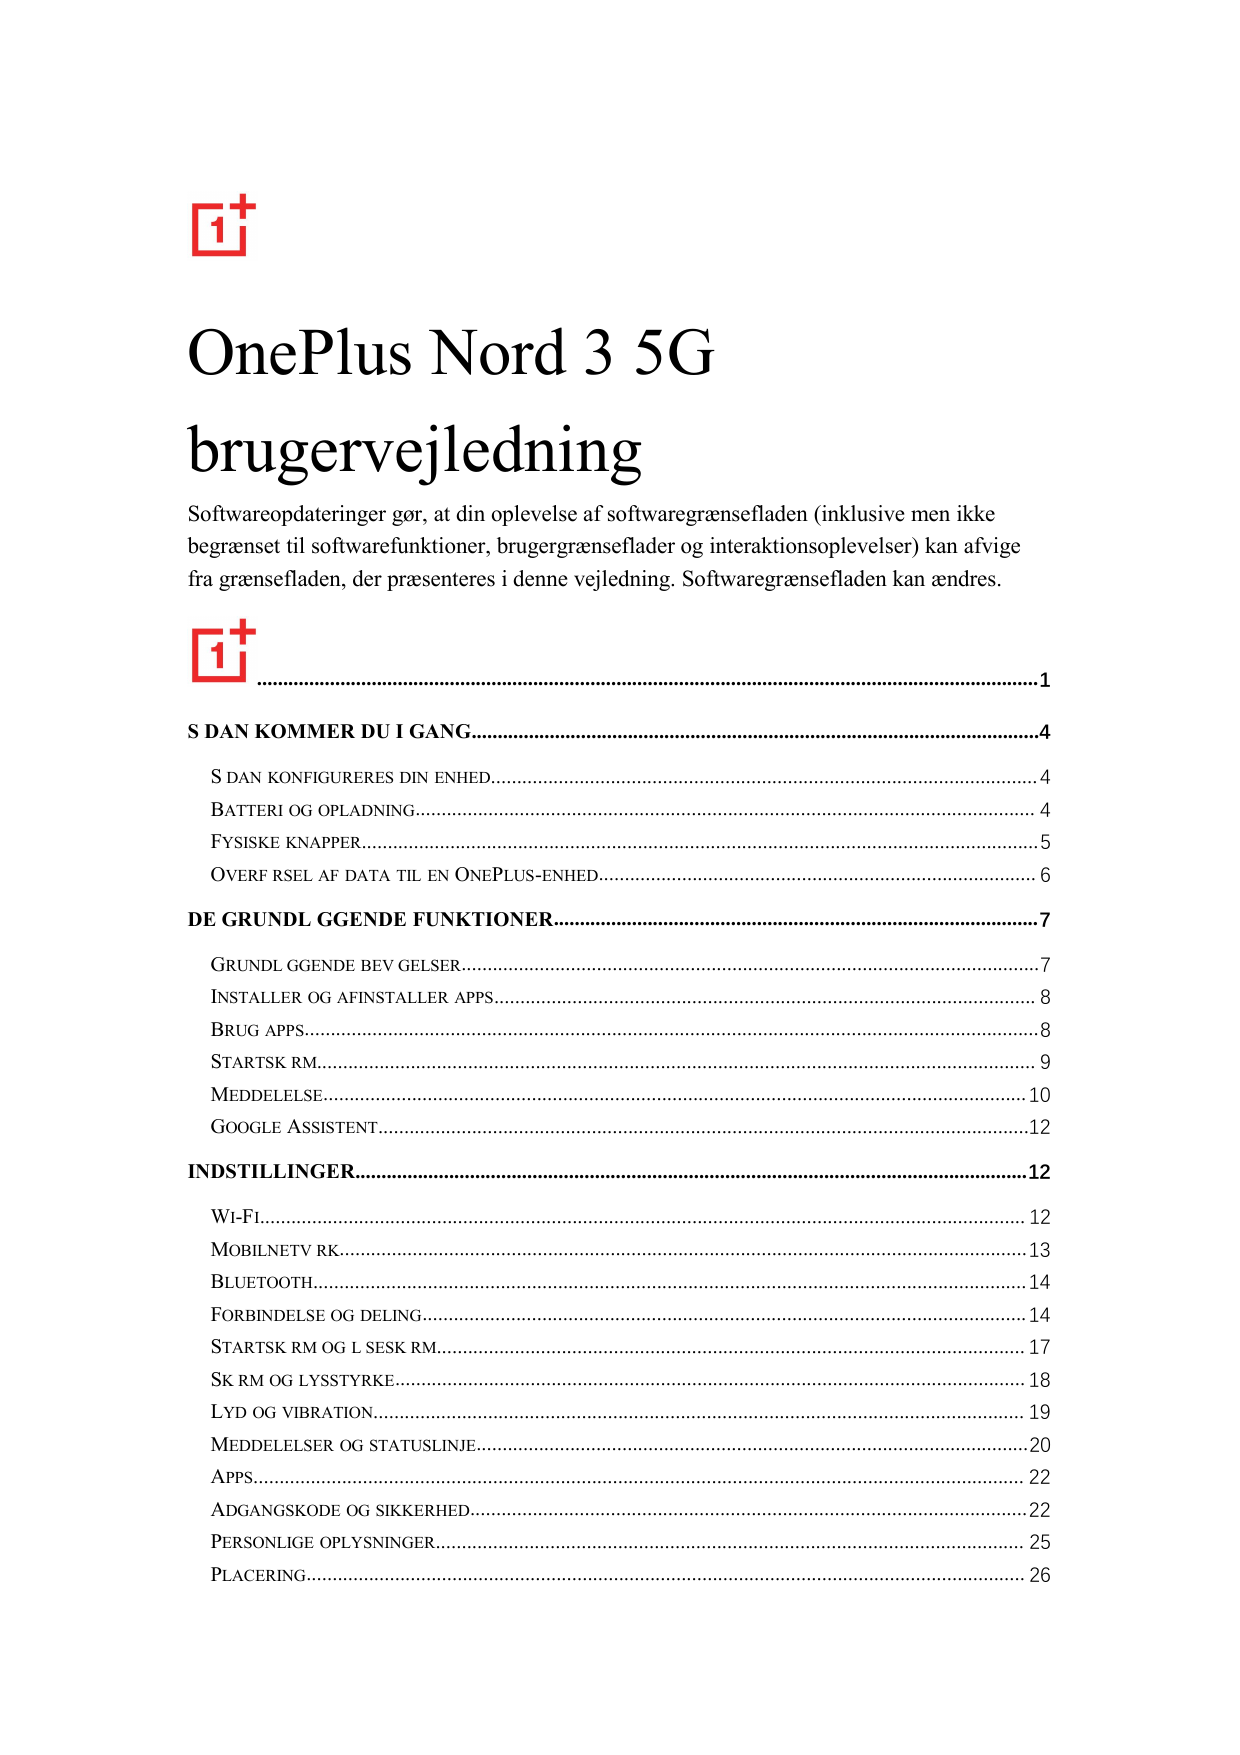 OnePlus Nord 3 5GbrugervejledningSoftwareopdateringer gør, at din oplevelse af softwaregrænsefladen (inklusive men ikkebegrænset